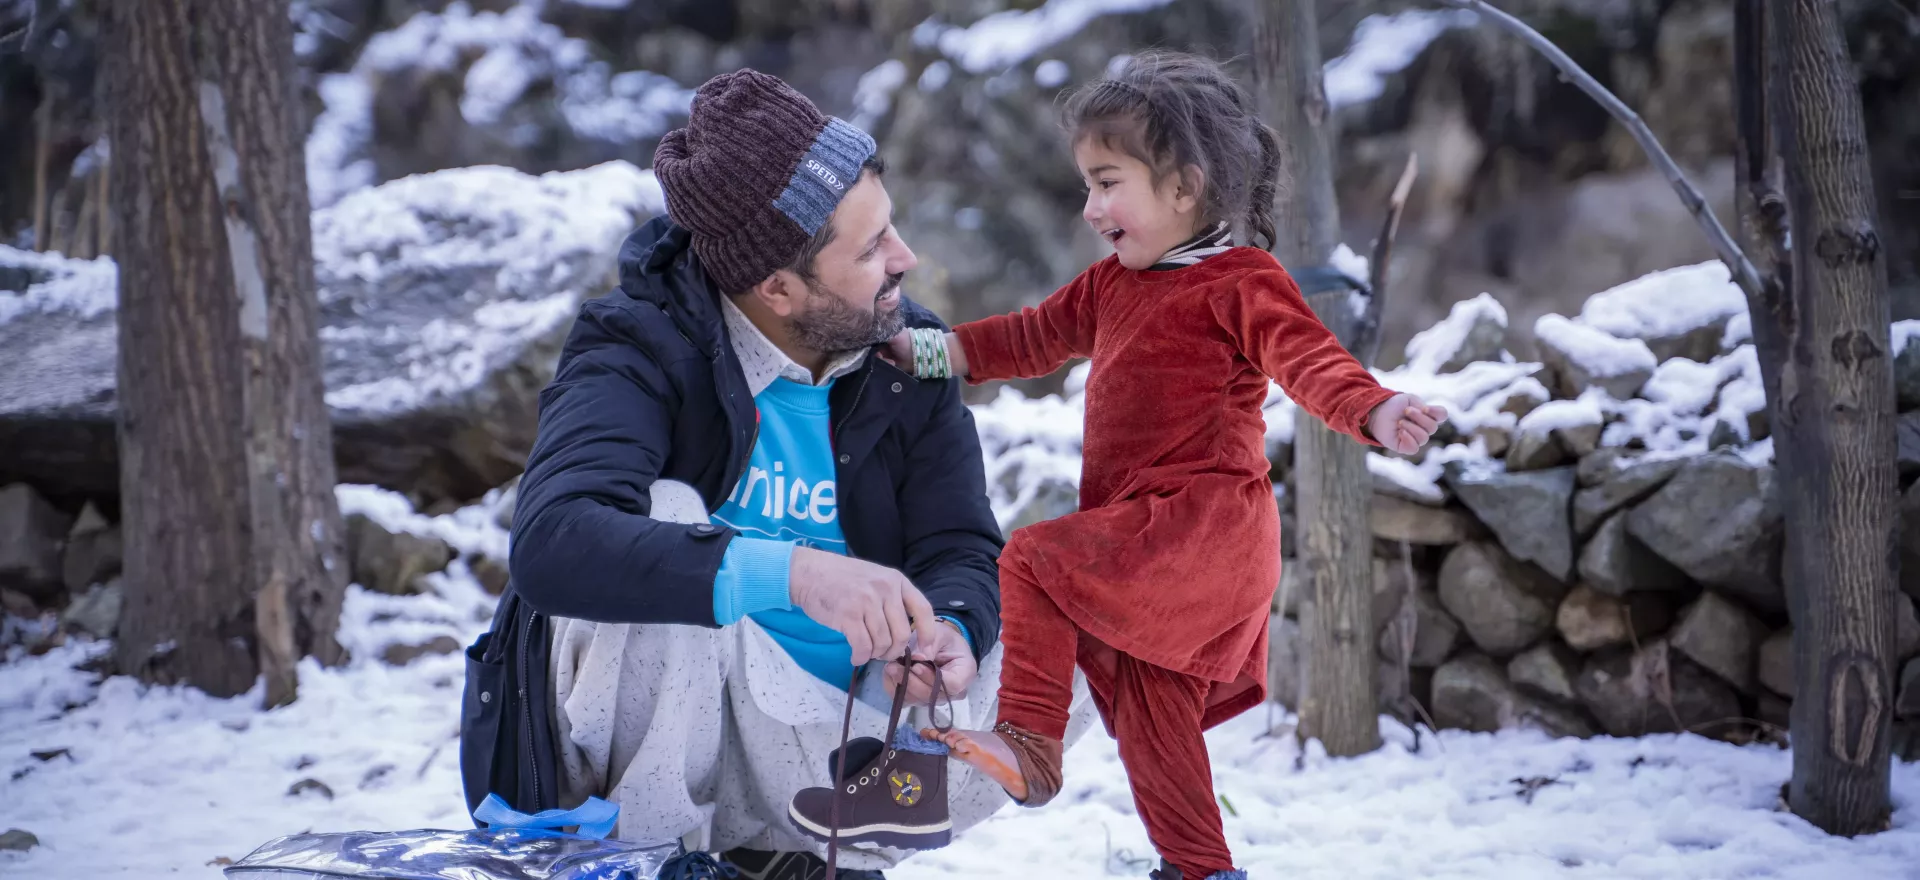 Un enfant met des chaussures neuves avec l’aide d’un agent de l’UNICEF. Dans un paysage enneigé. 